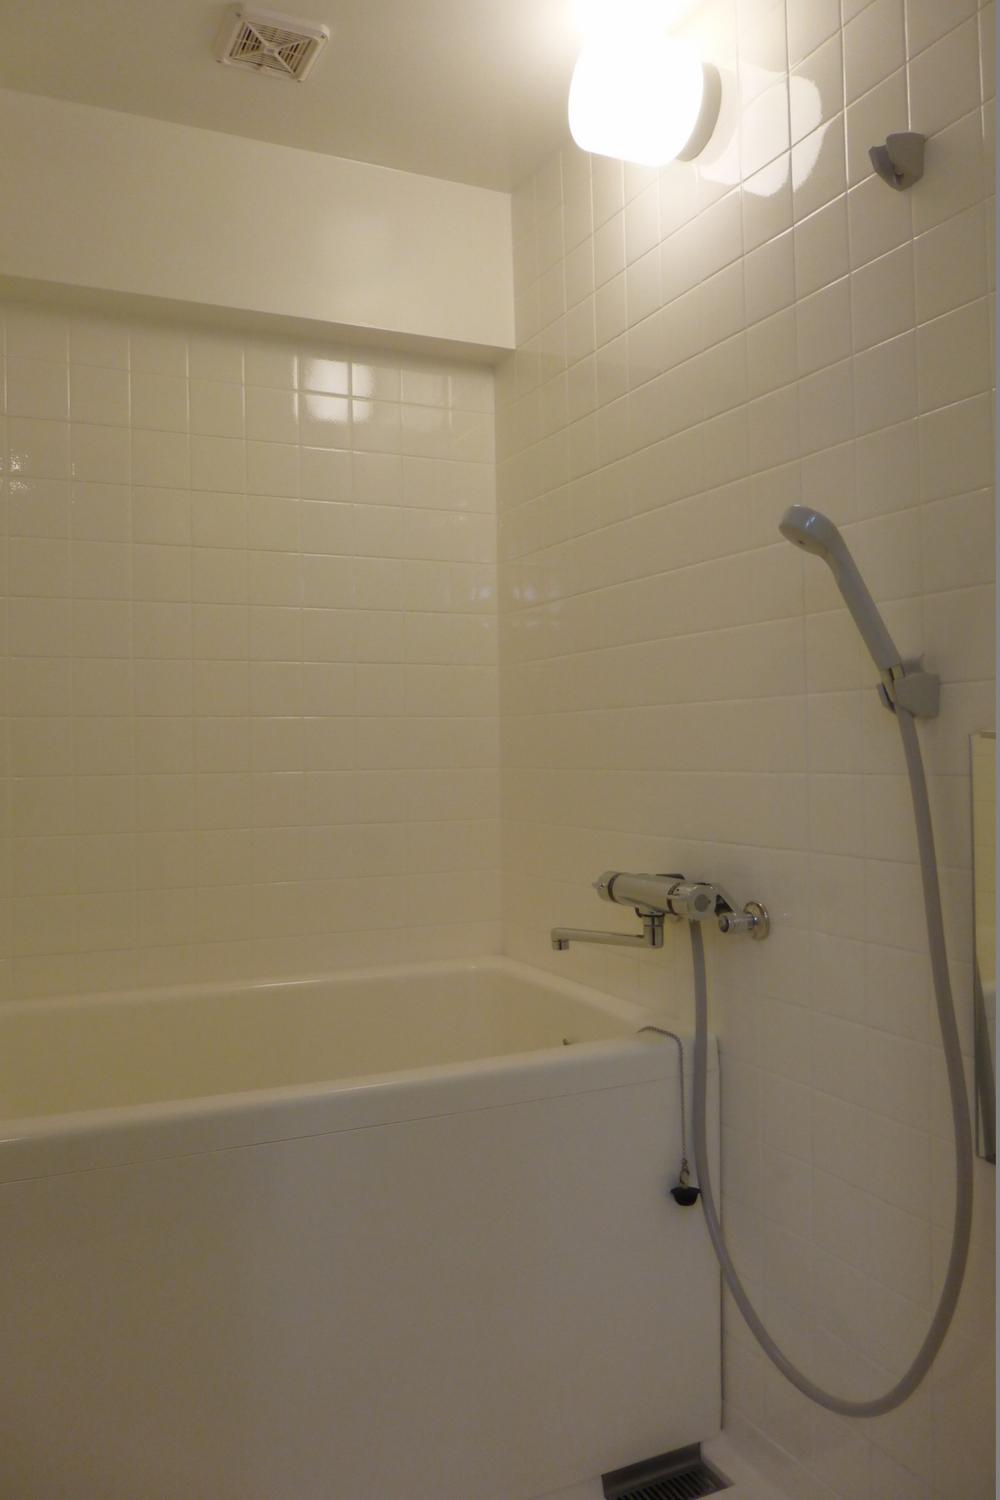 Bathroom. Shower Faucets ・ mirror ・ Bath lid ・ Entrance door already replaced